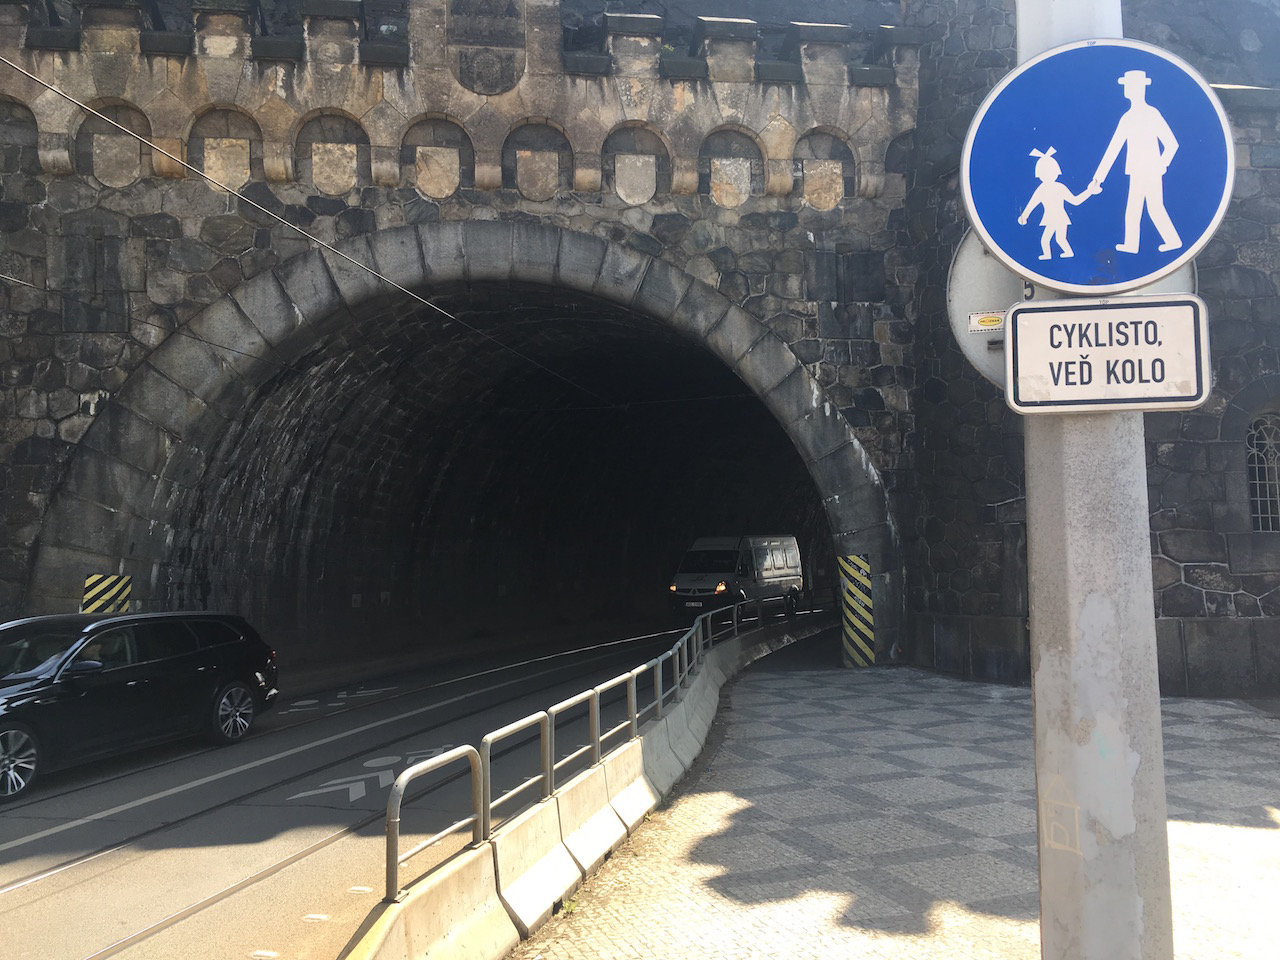 Vyšehradským tunelem smějí cyklisté procházet jen pěšky a vést kolo. Myslíte, že to dodržují?